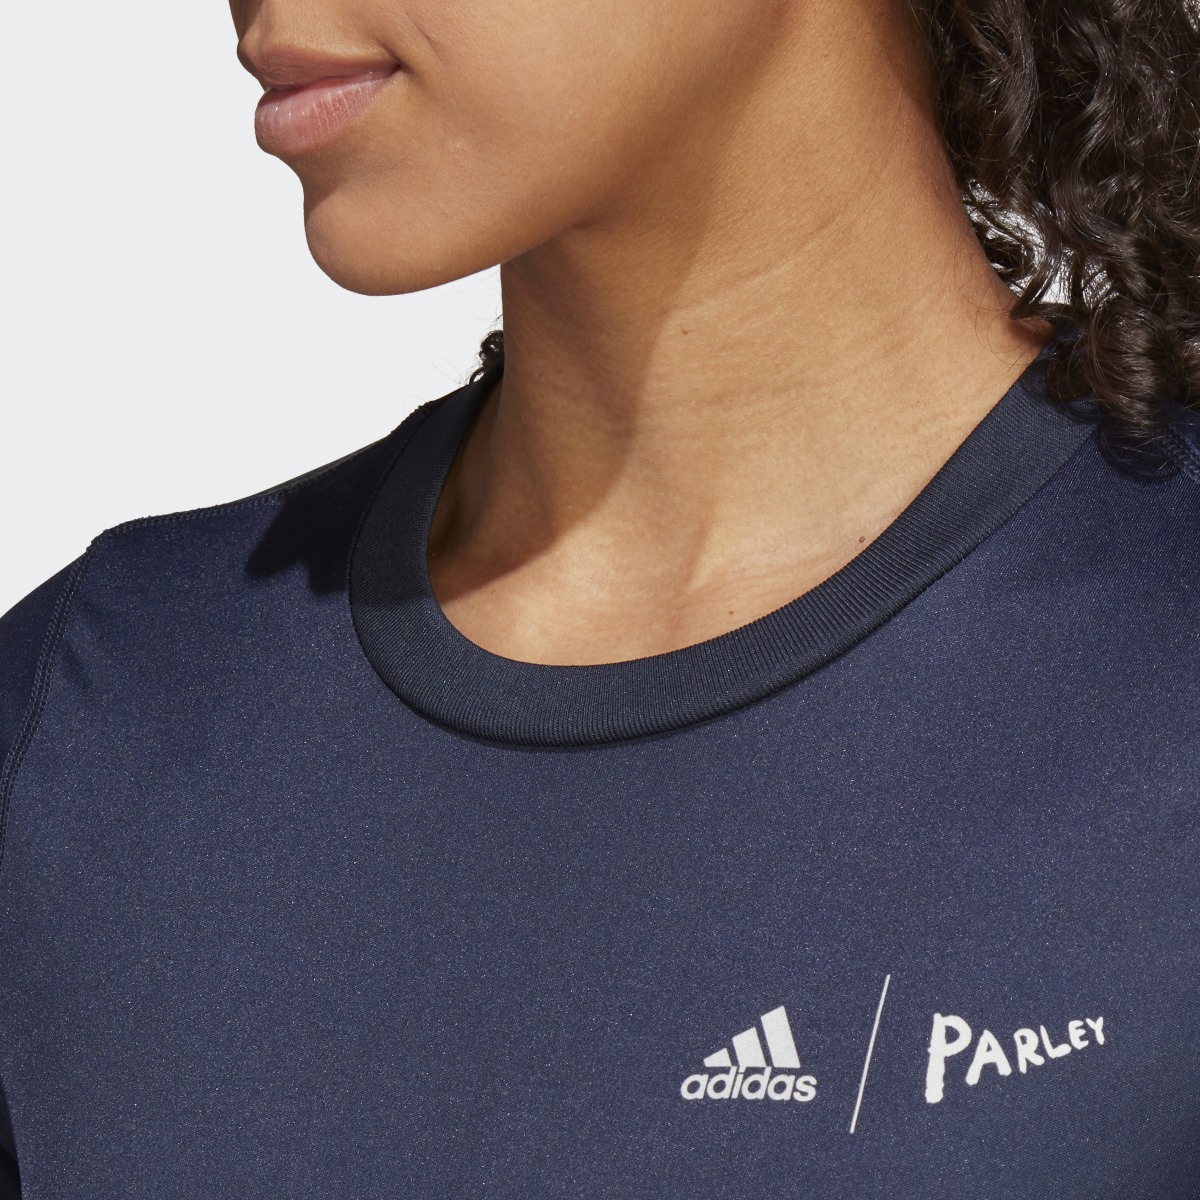 Adidas T-shirt de running adidas x Parley. 6